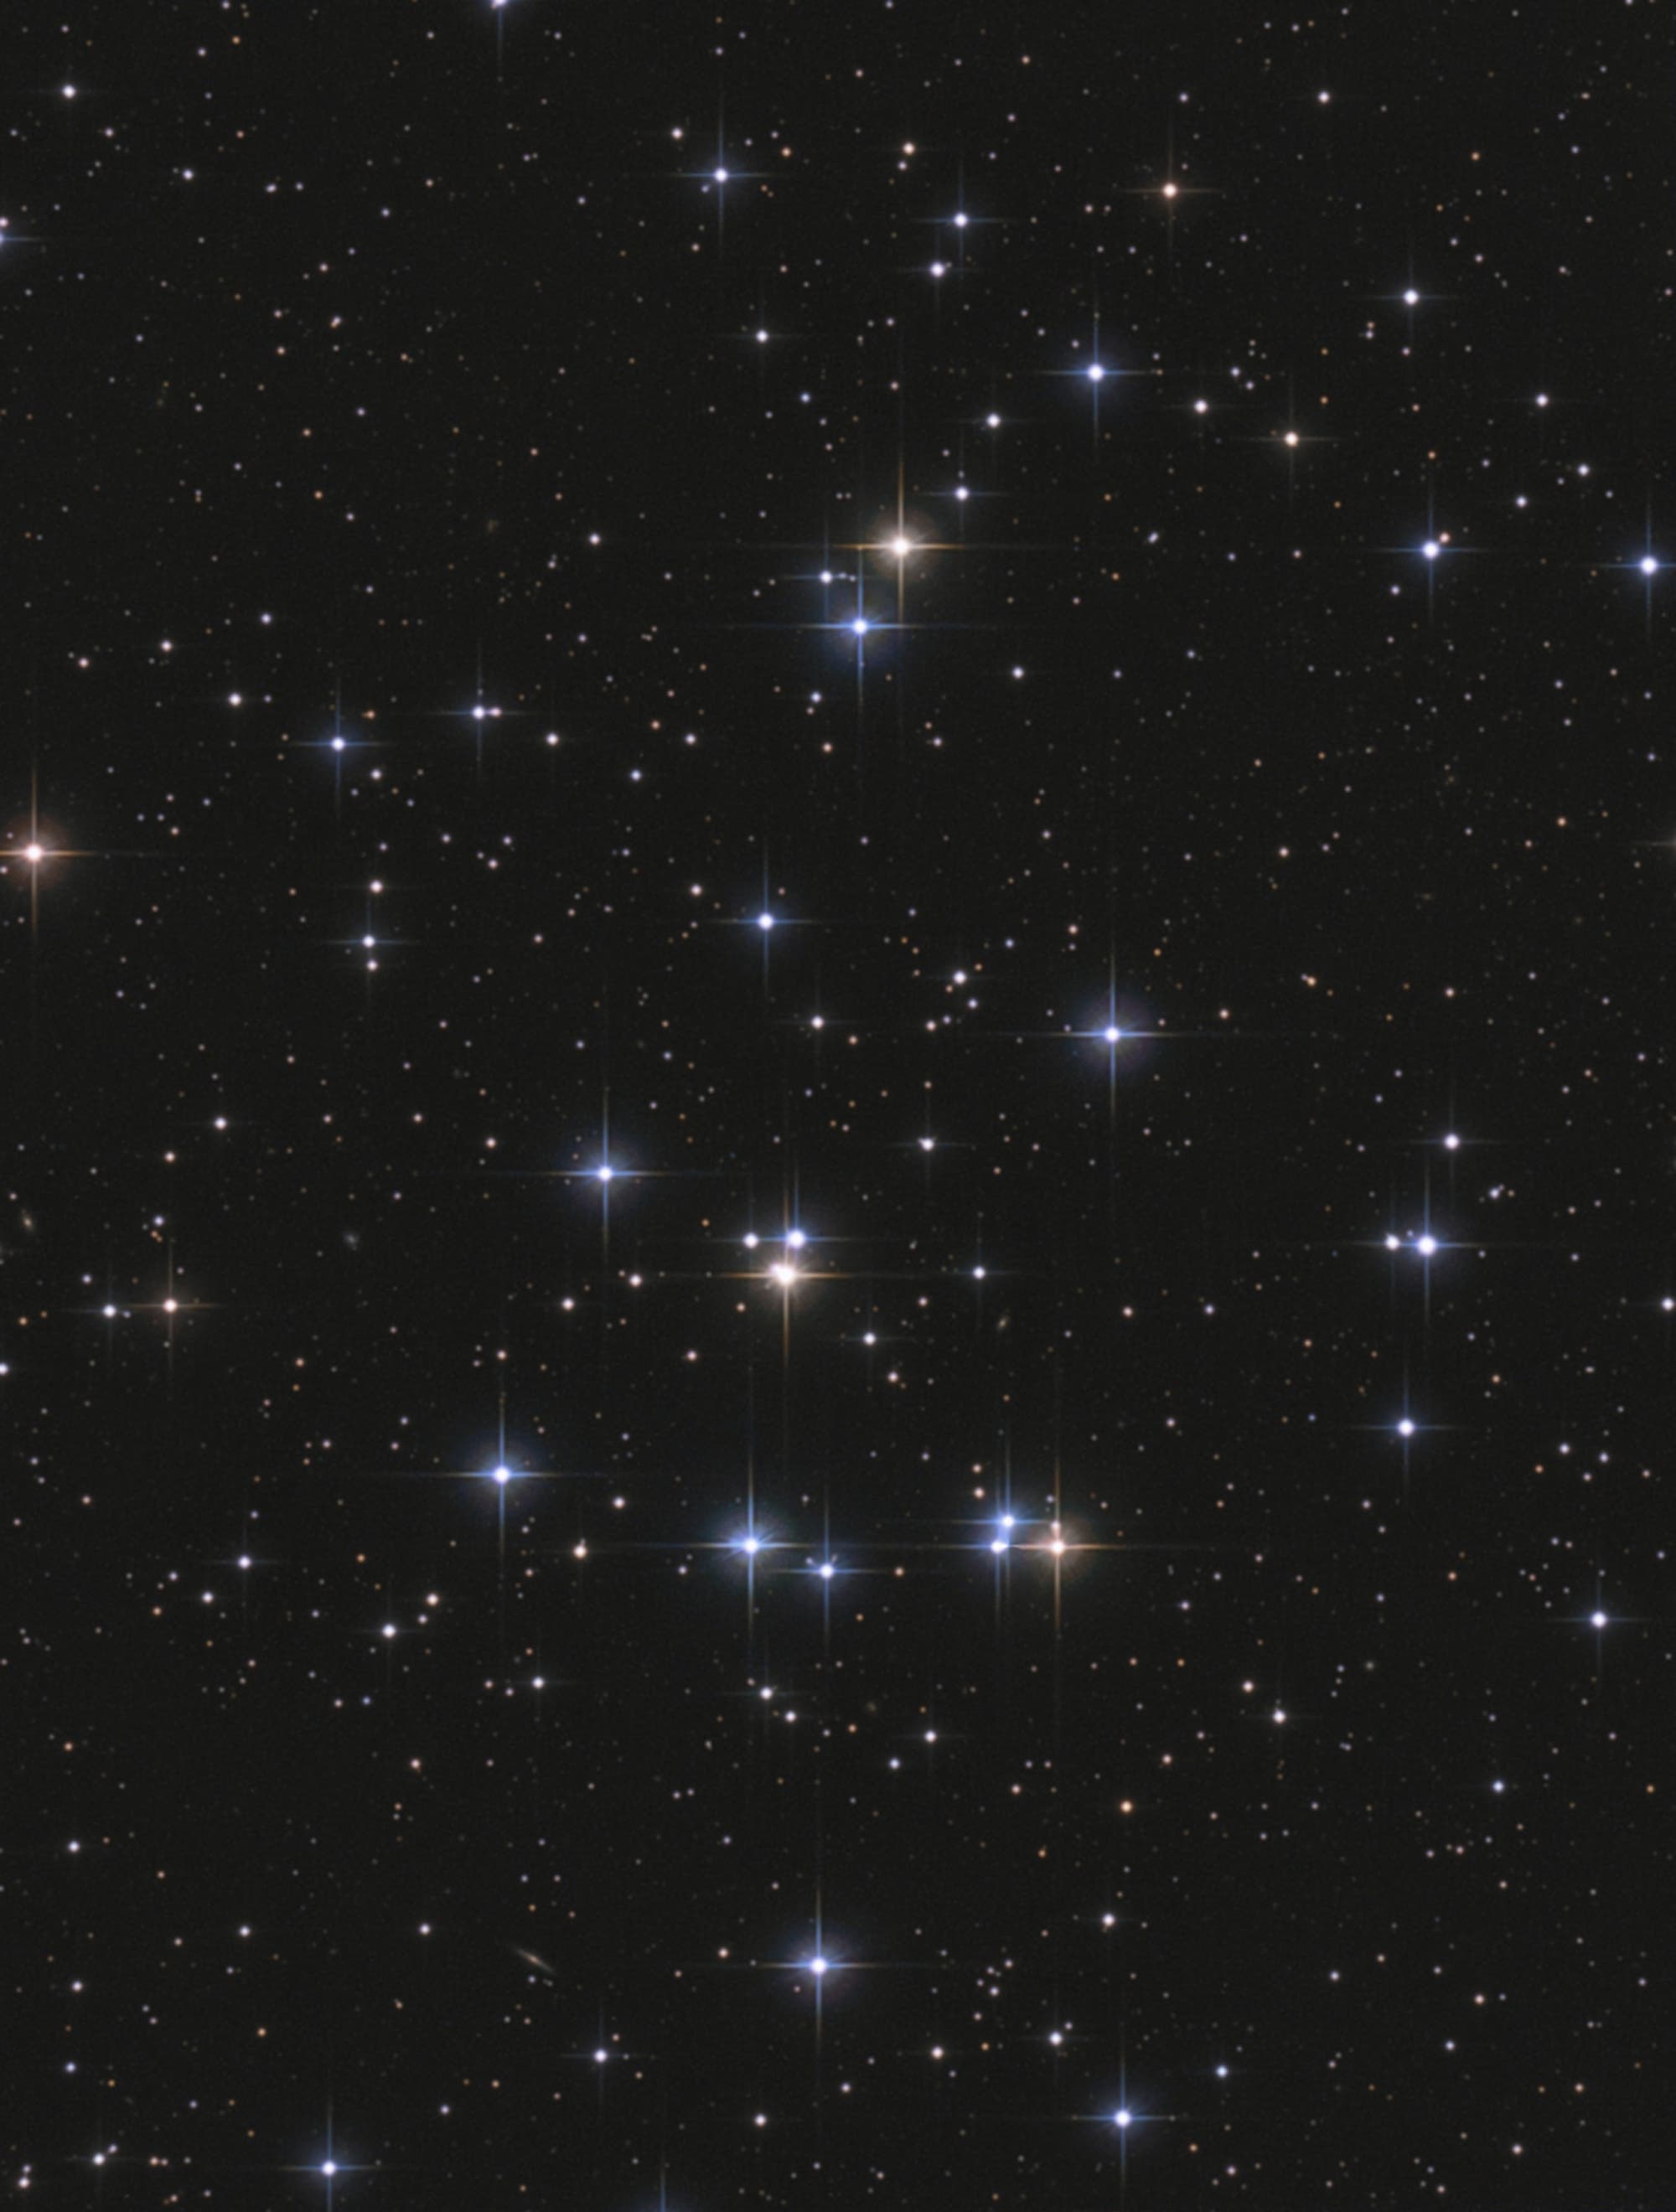 Der offene Sternhaufen Messier 44 im Sternbild Krebs